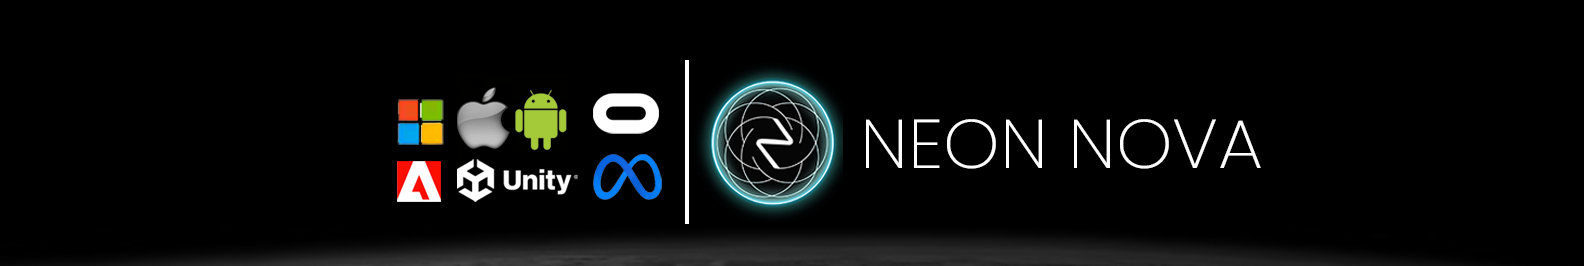 Neon Nova's profile banner